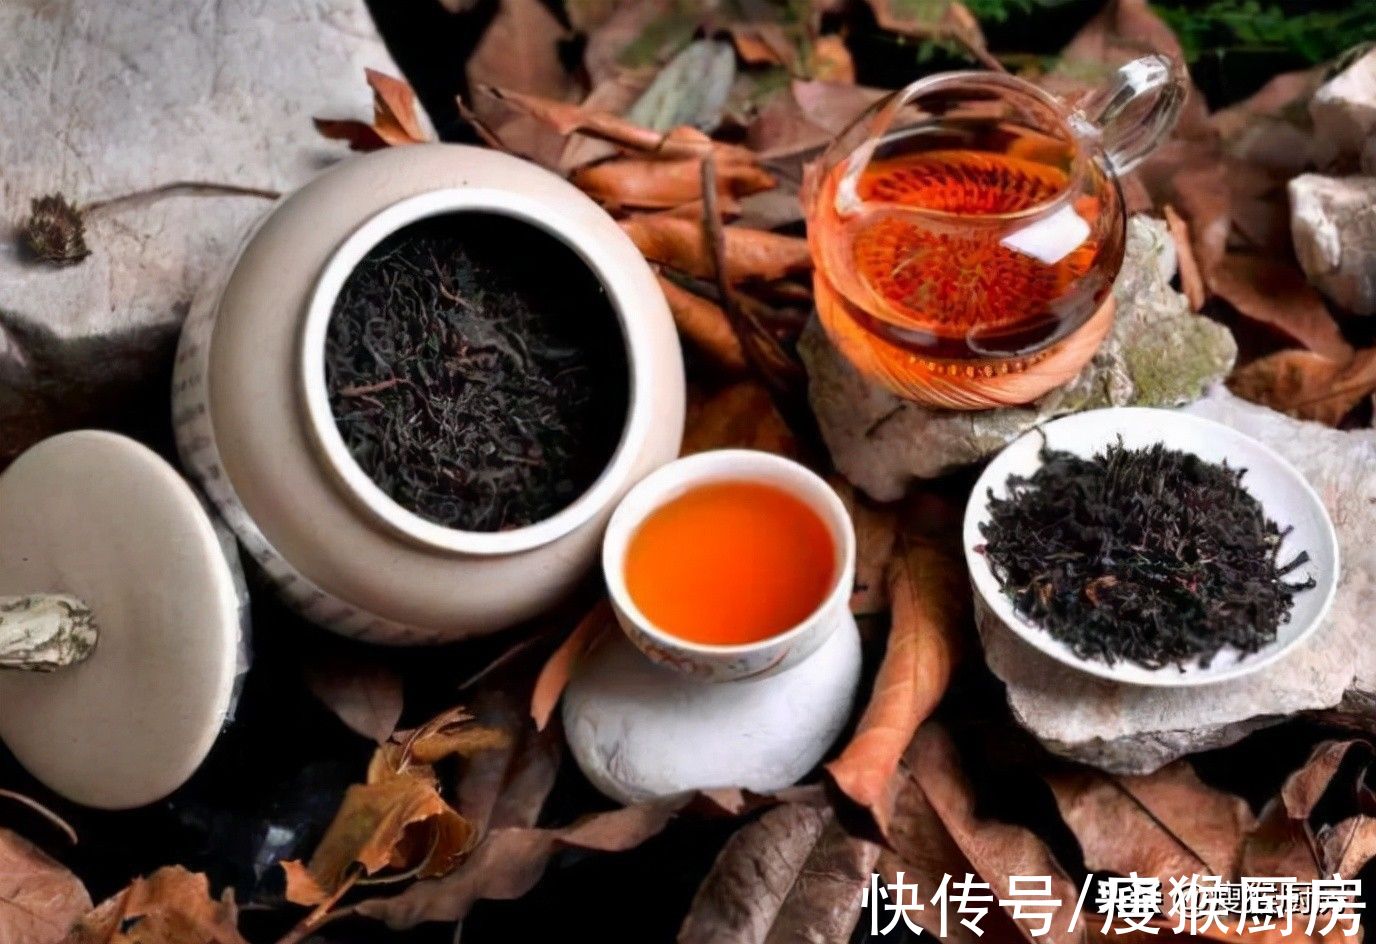 老茶客|中国茶叶品种千千万，到底哪种茶最好喝呢？听听老茶客怎么说